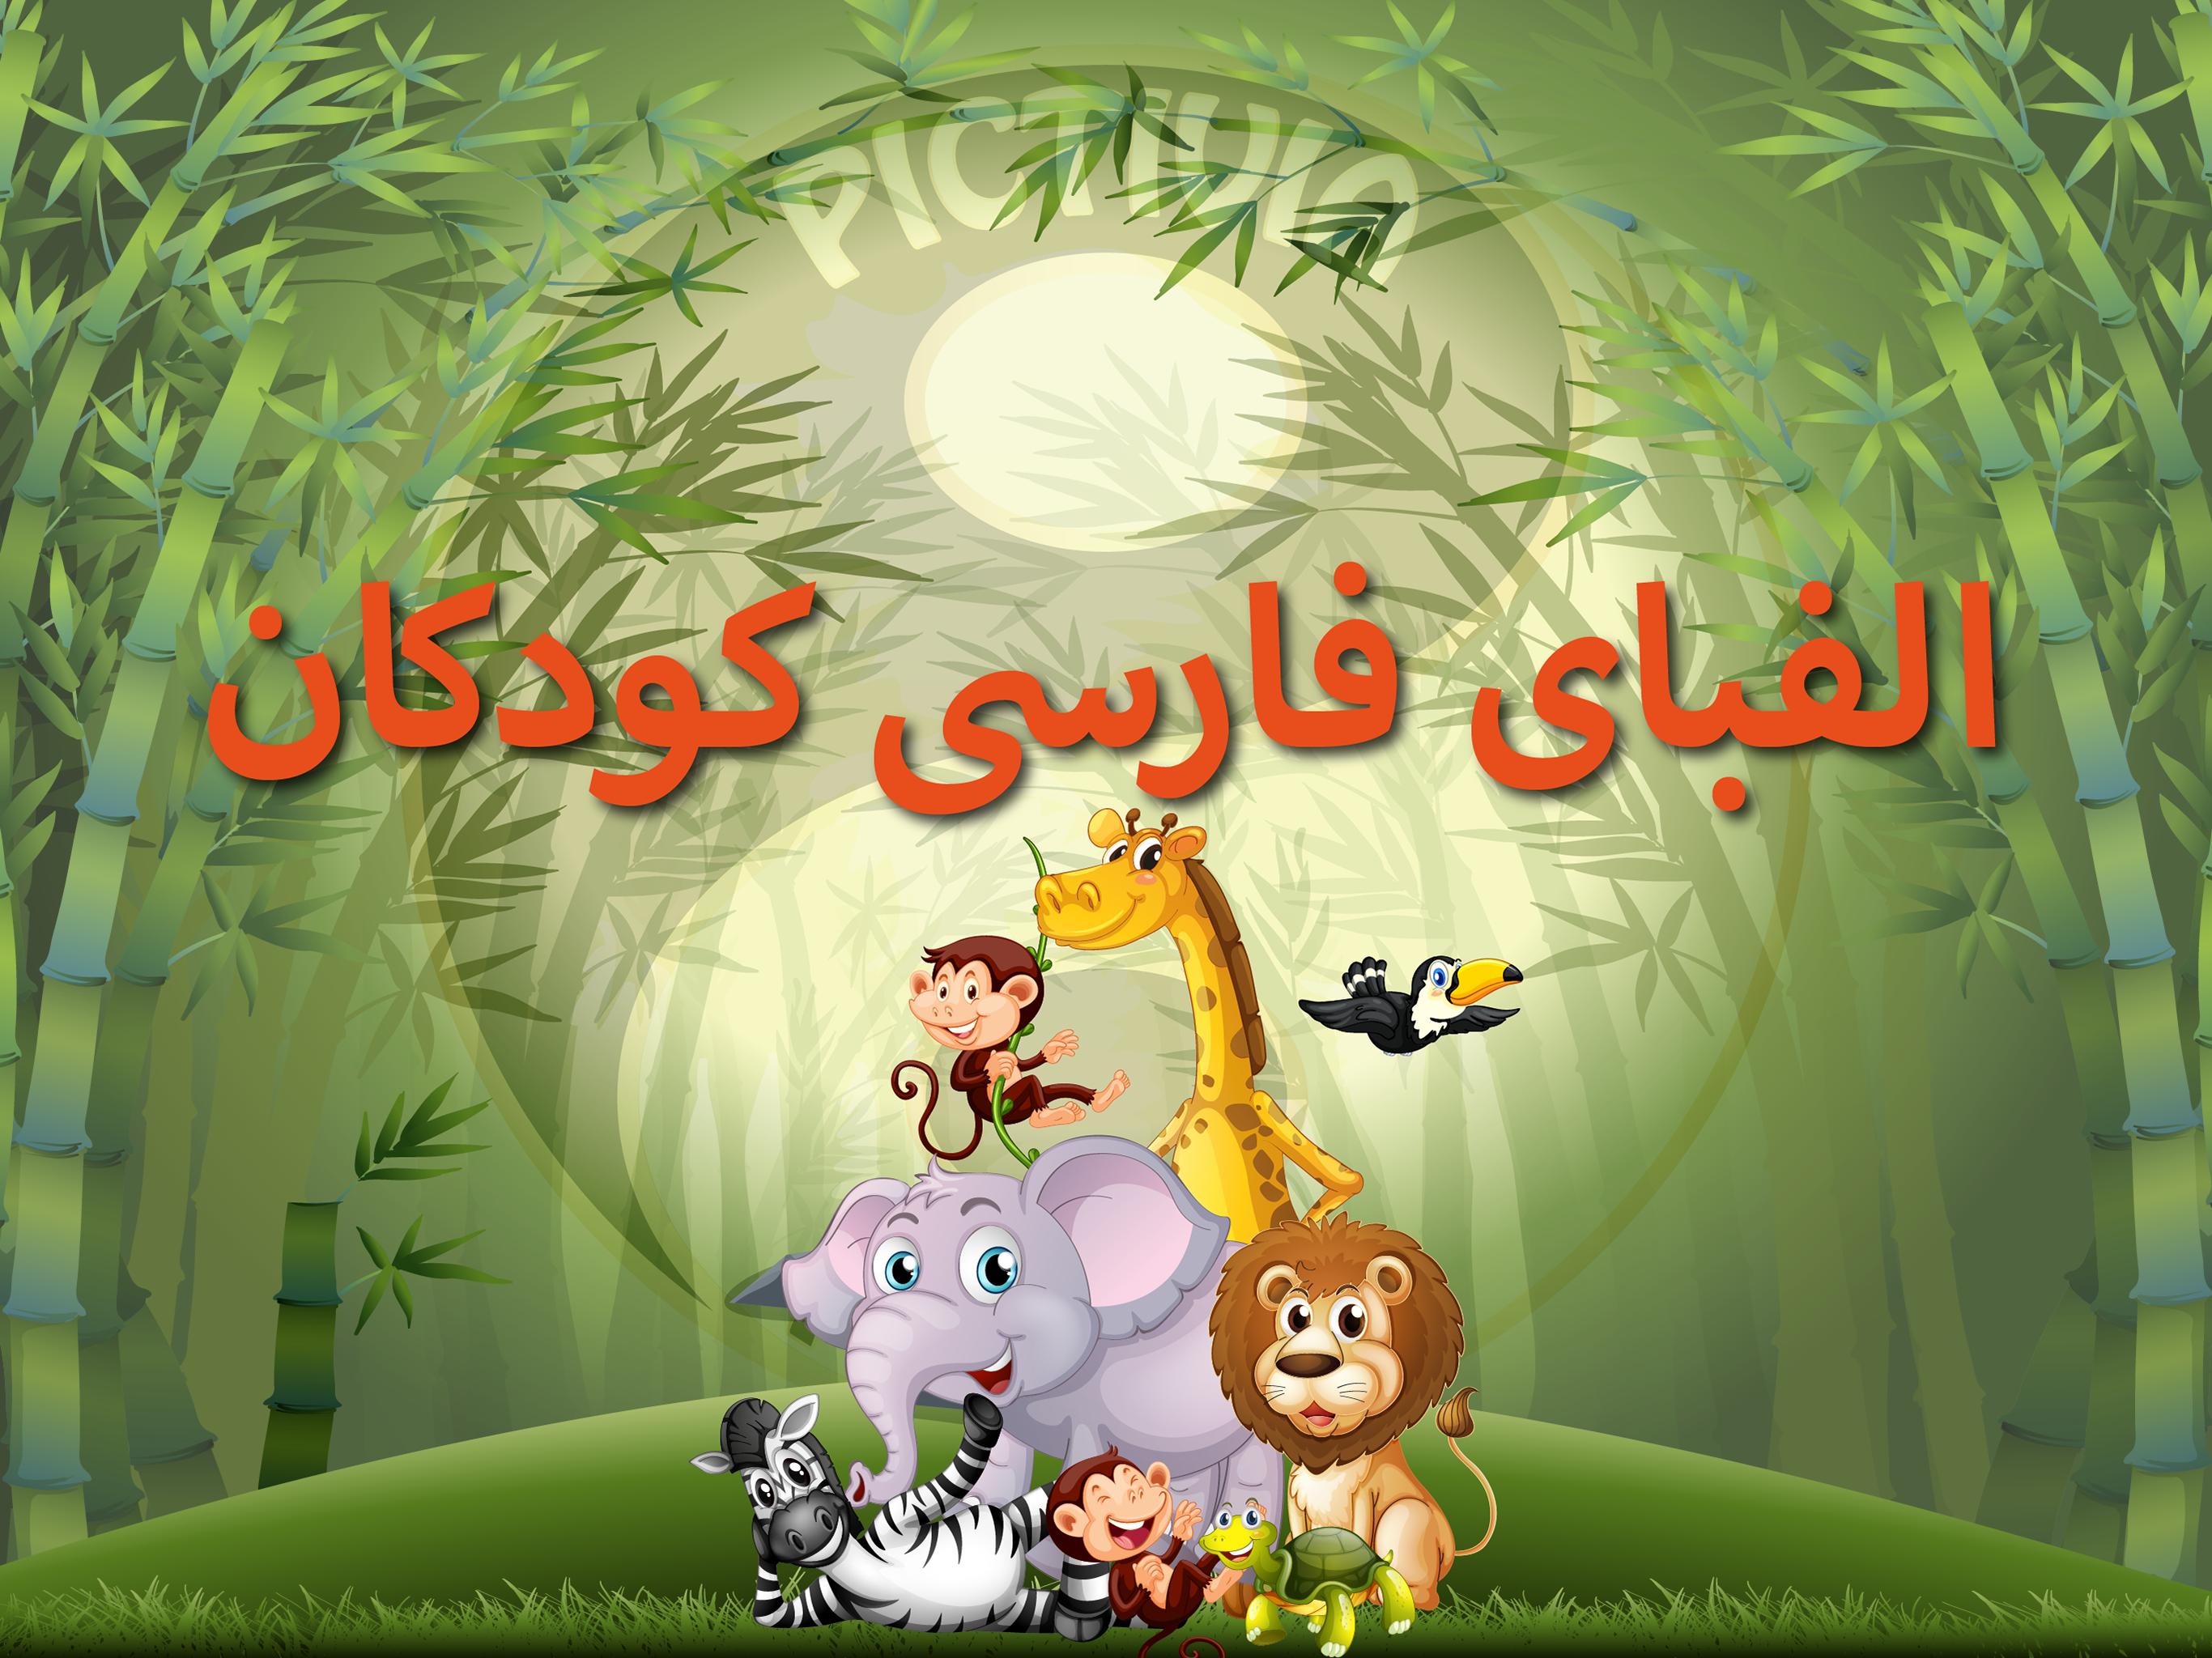 الفبای فارسی کودکان (Farsi alphabet game) 1.11.2 Screenshot 17